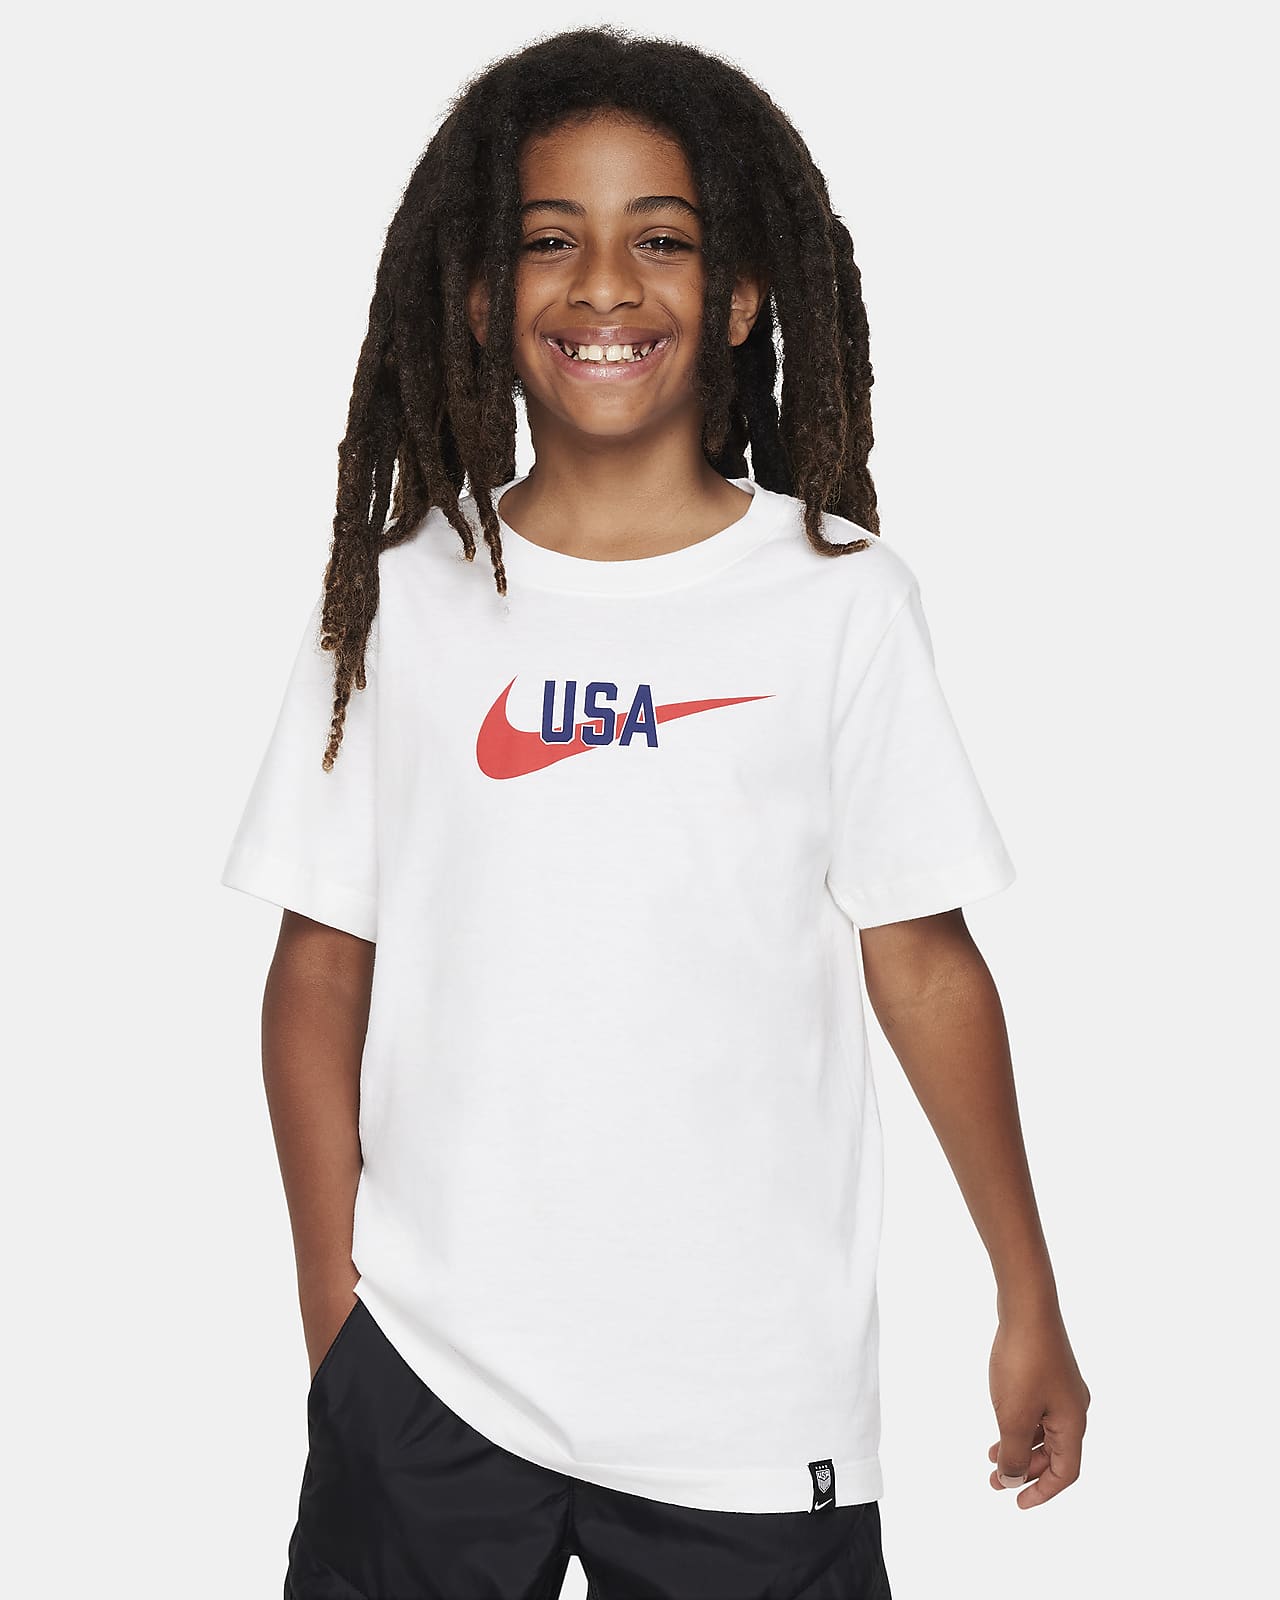 U.S. Swoosh Women's Nike T-Shirt